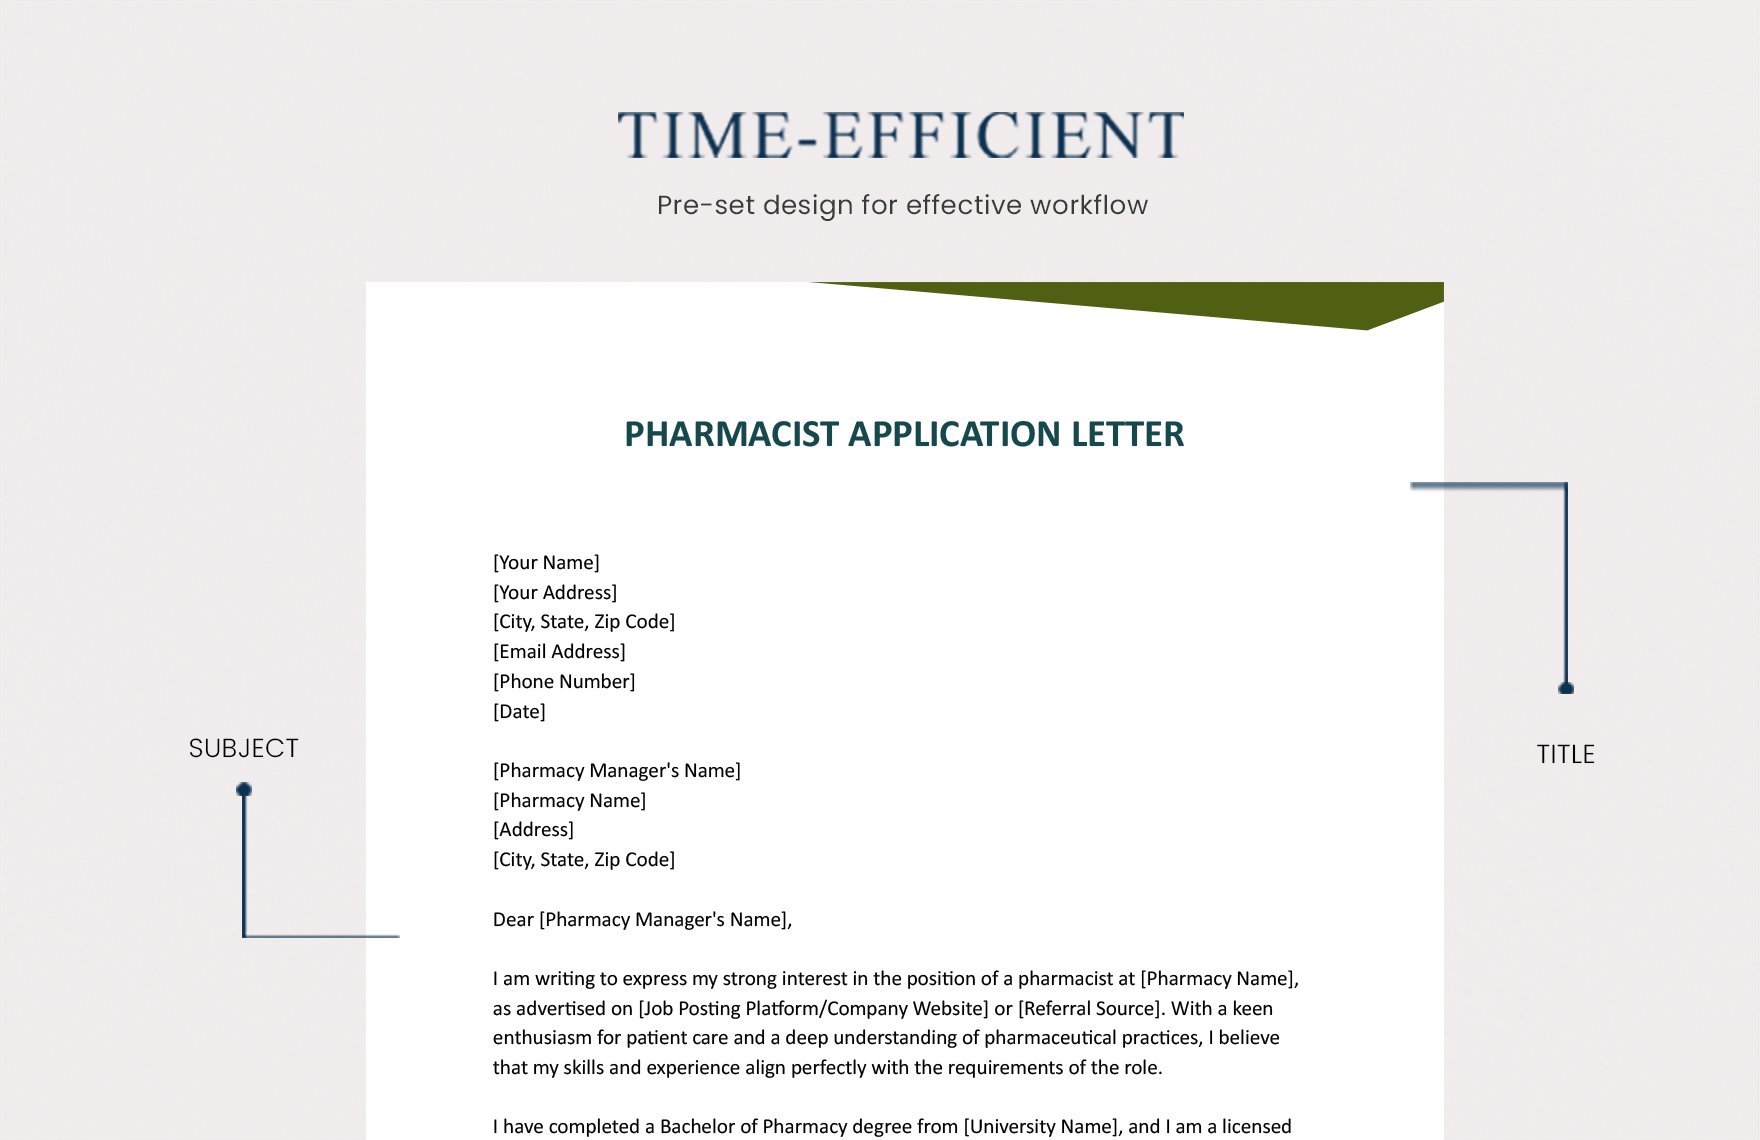 Pharmacist Application Letter